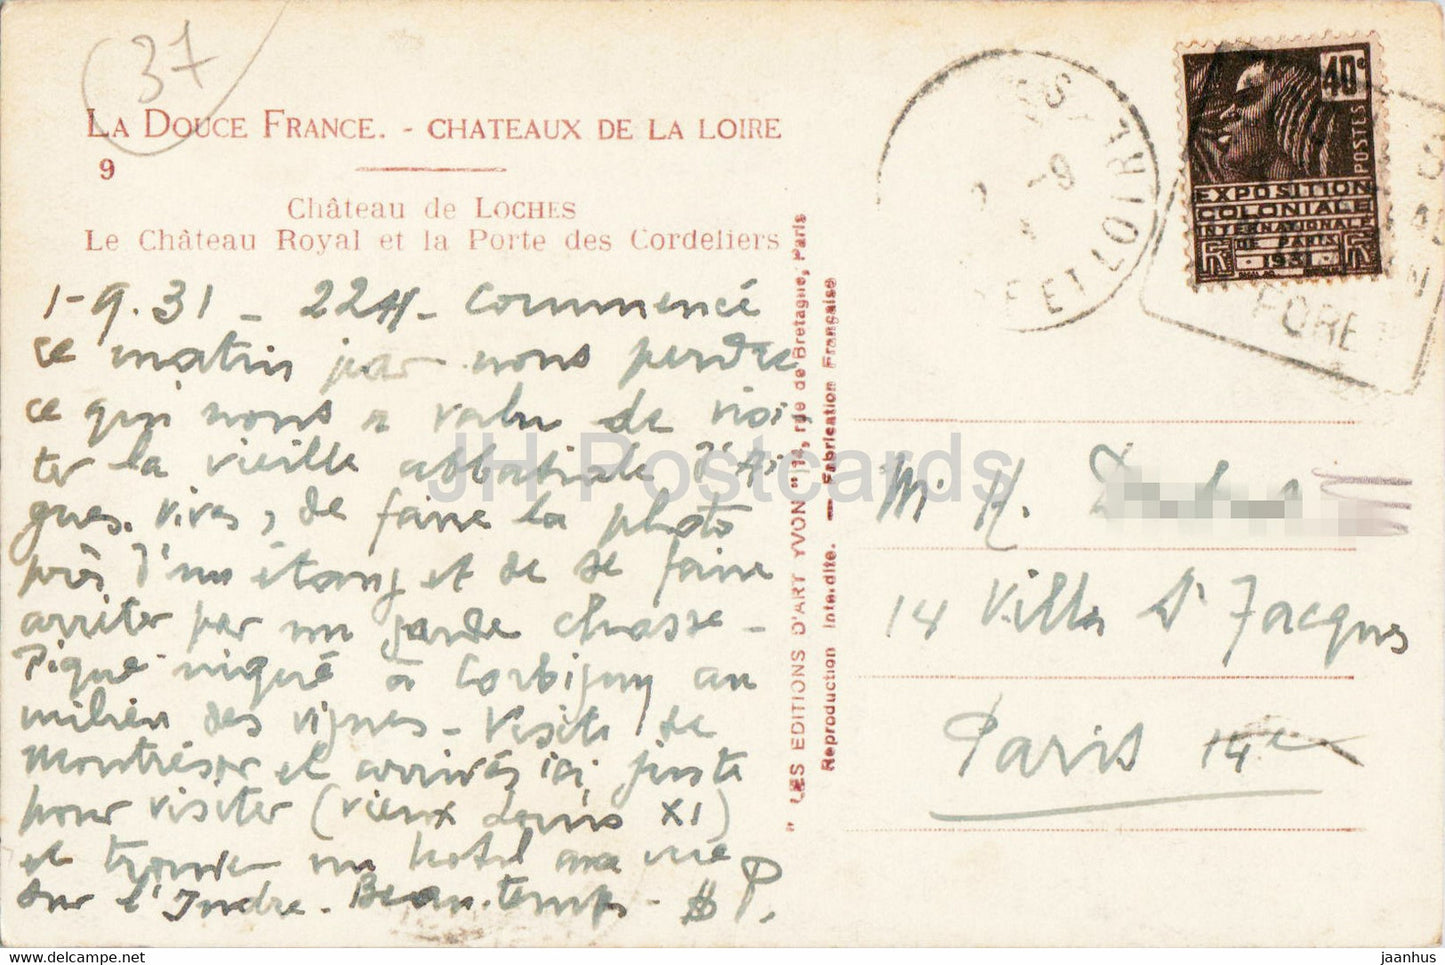 Chateau de Loches - Le Chateau Royal et la Porte des Cordeliers - 9 - old postcard - 1931 - France - used